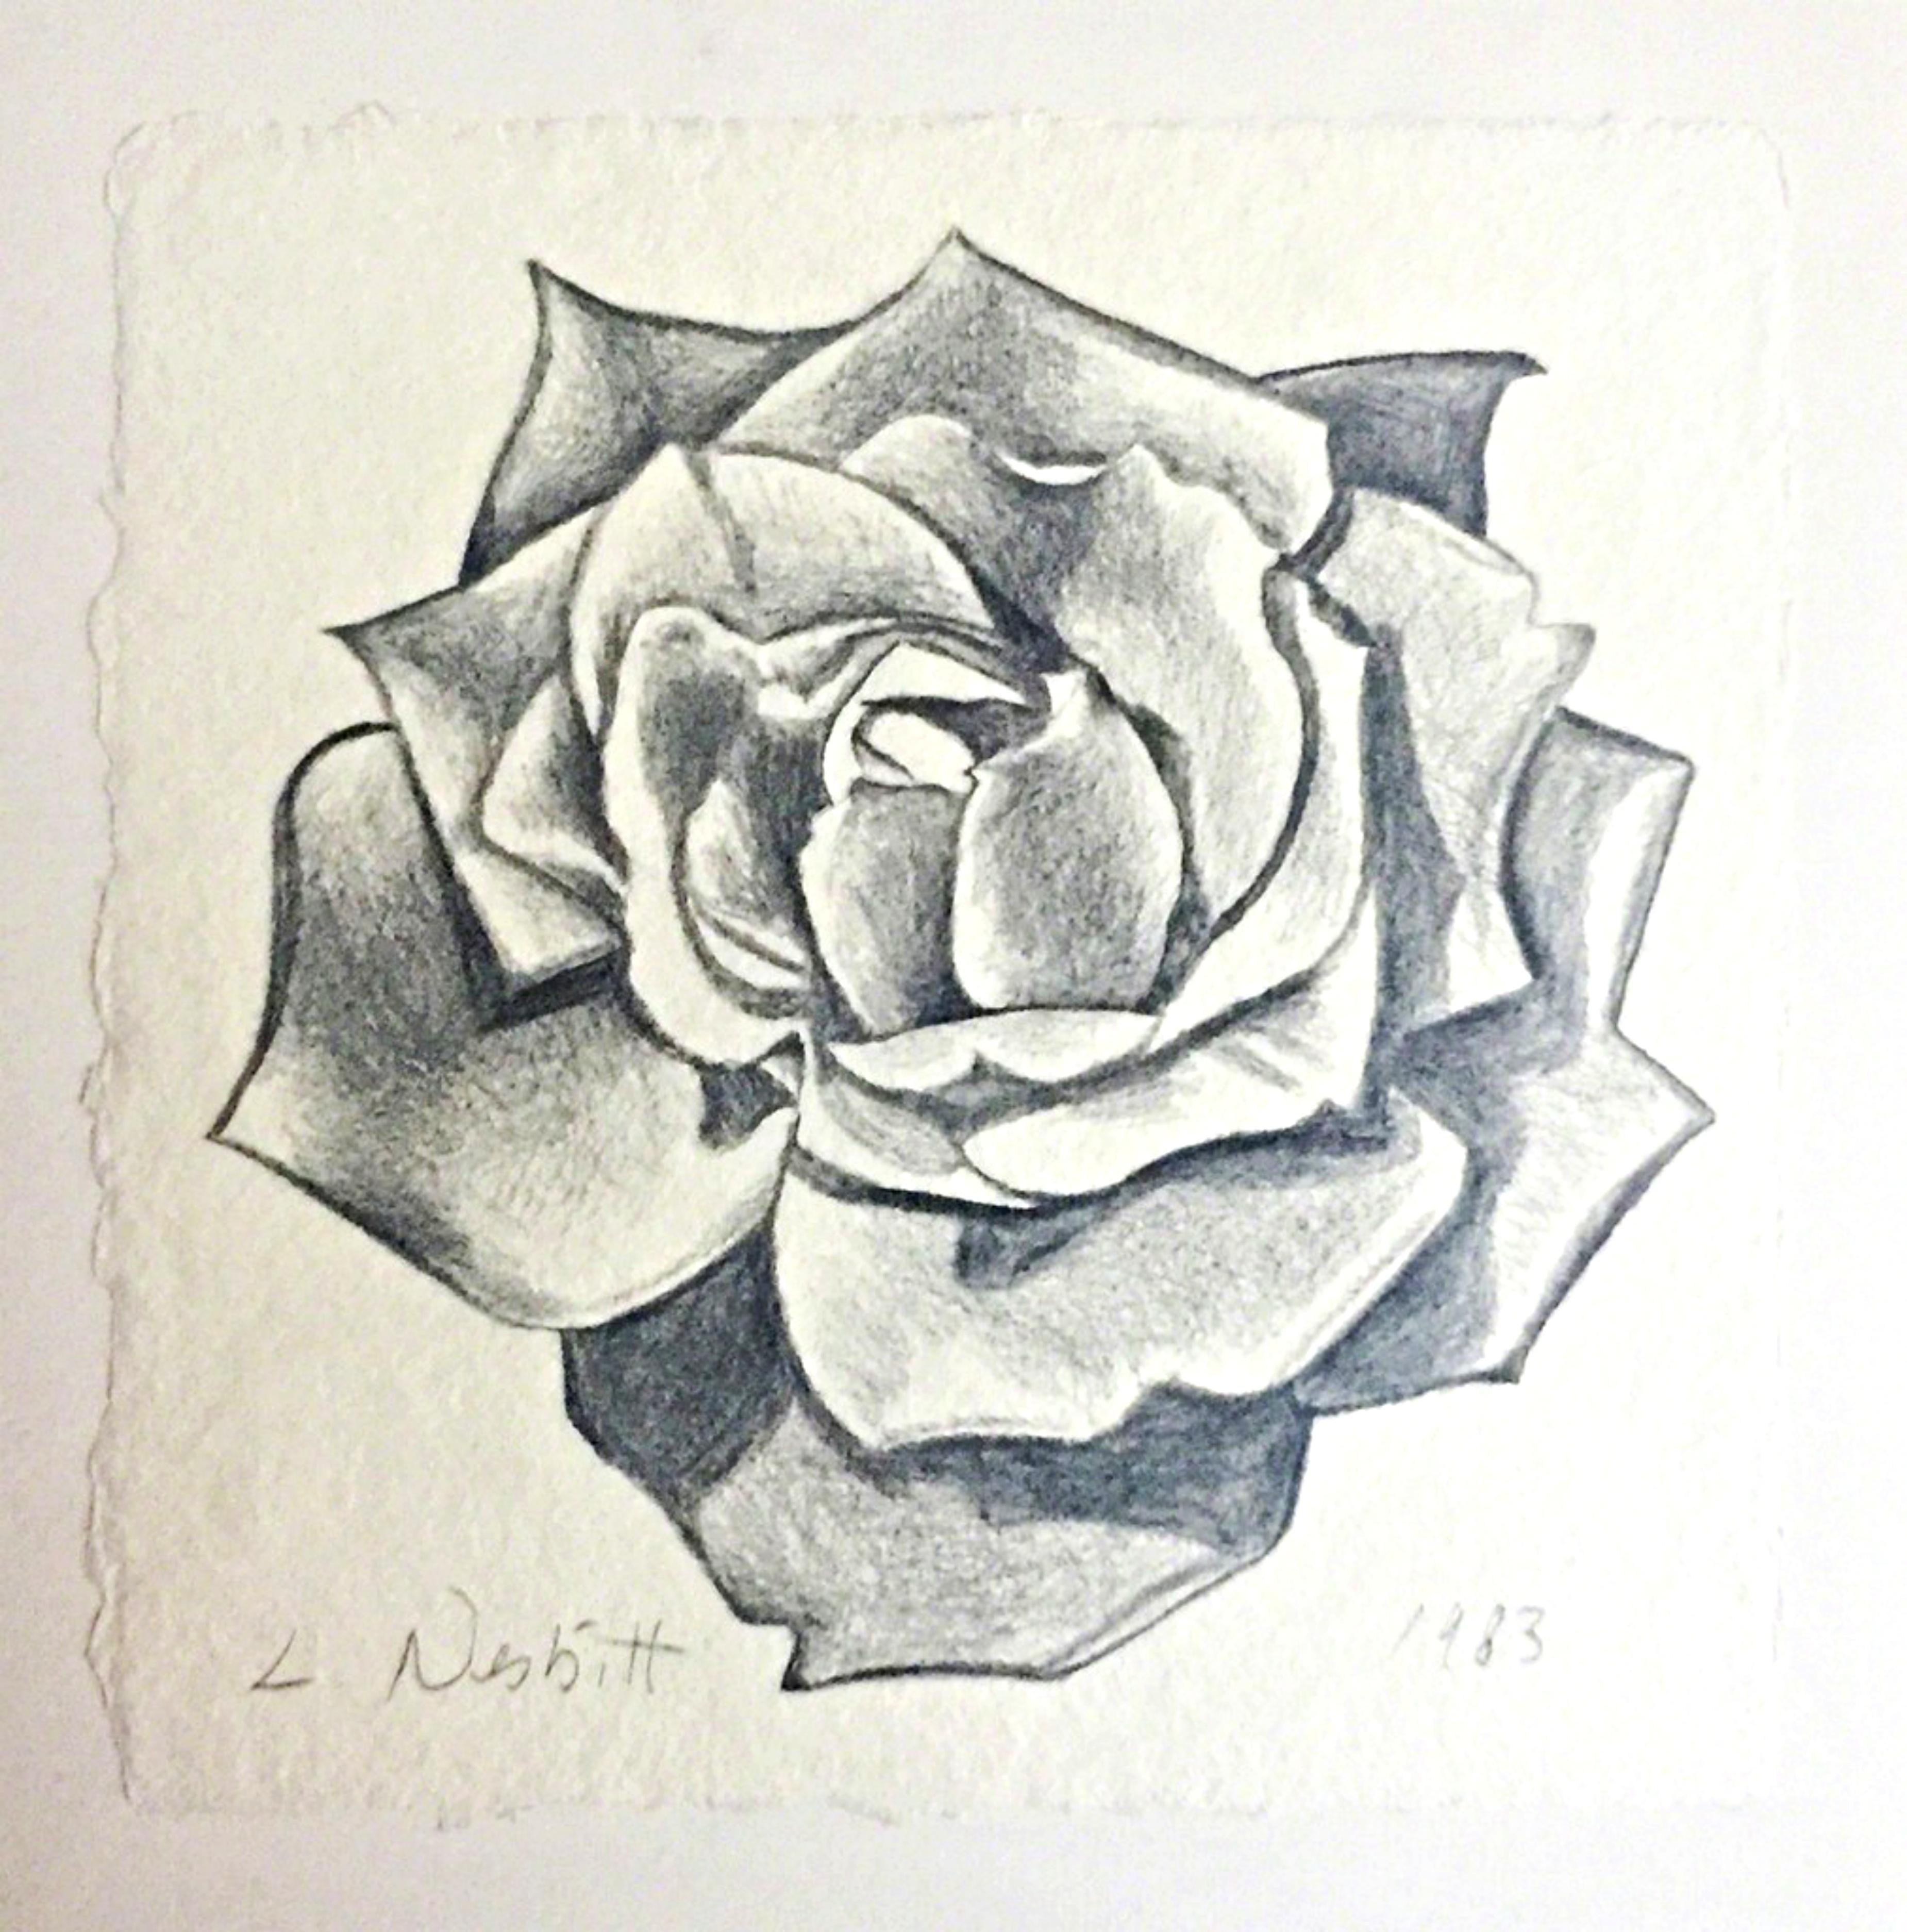 Exquis  Dessin de rose (unique) réalisé au graphite, signé à la main avec provenance